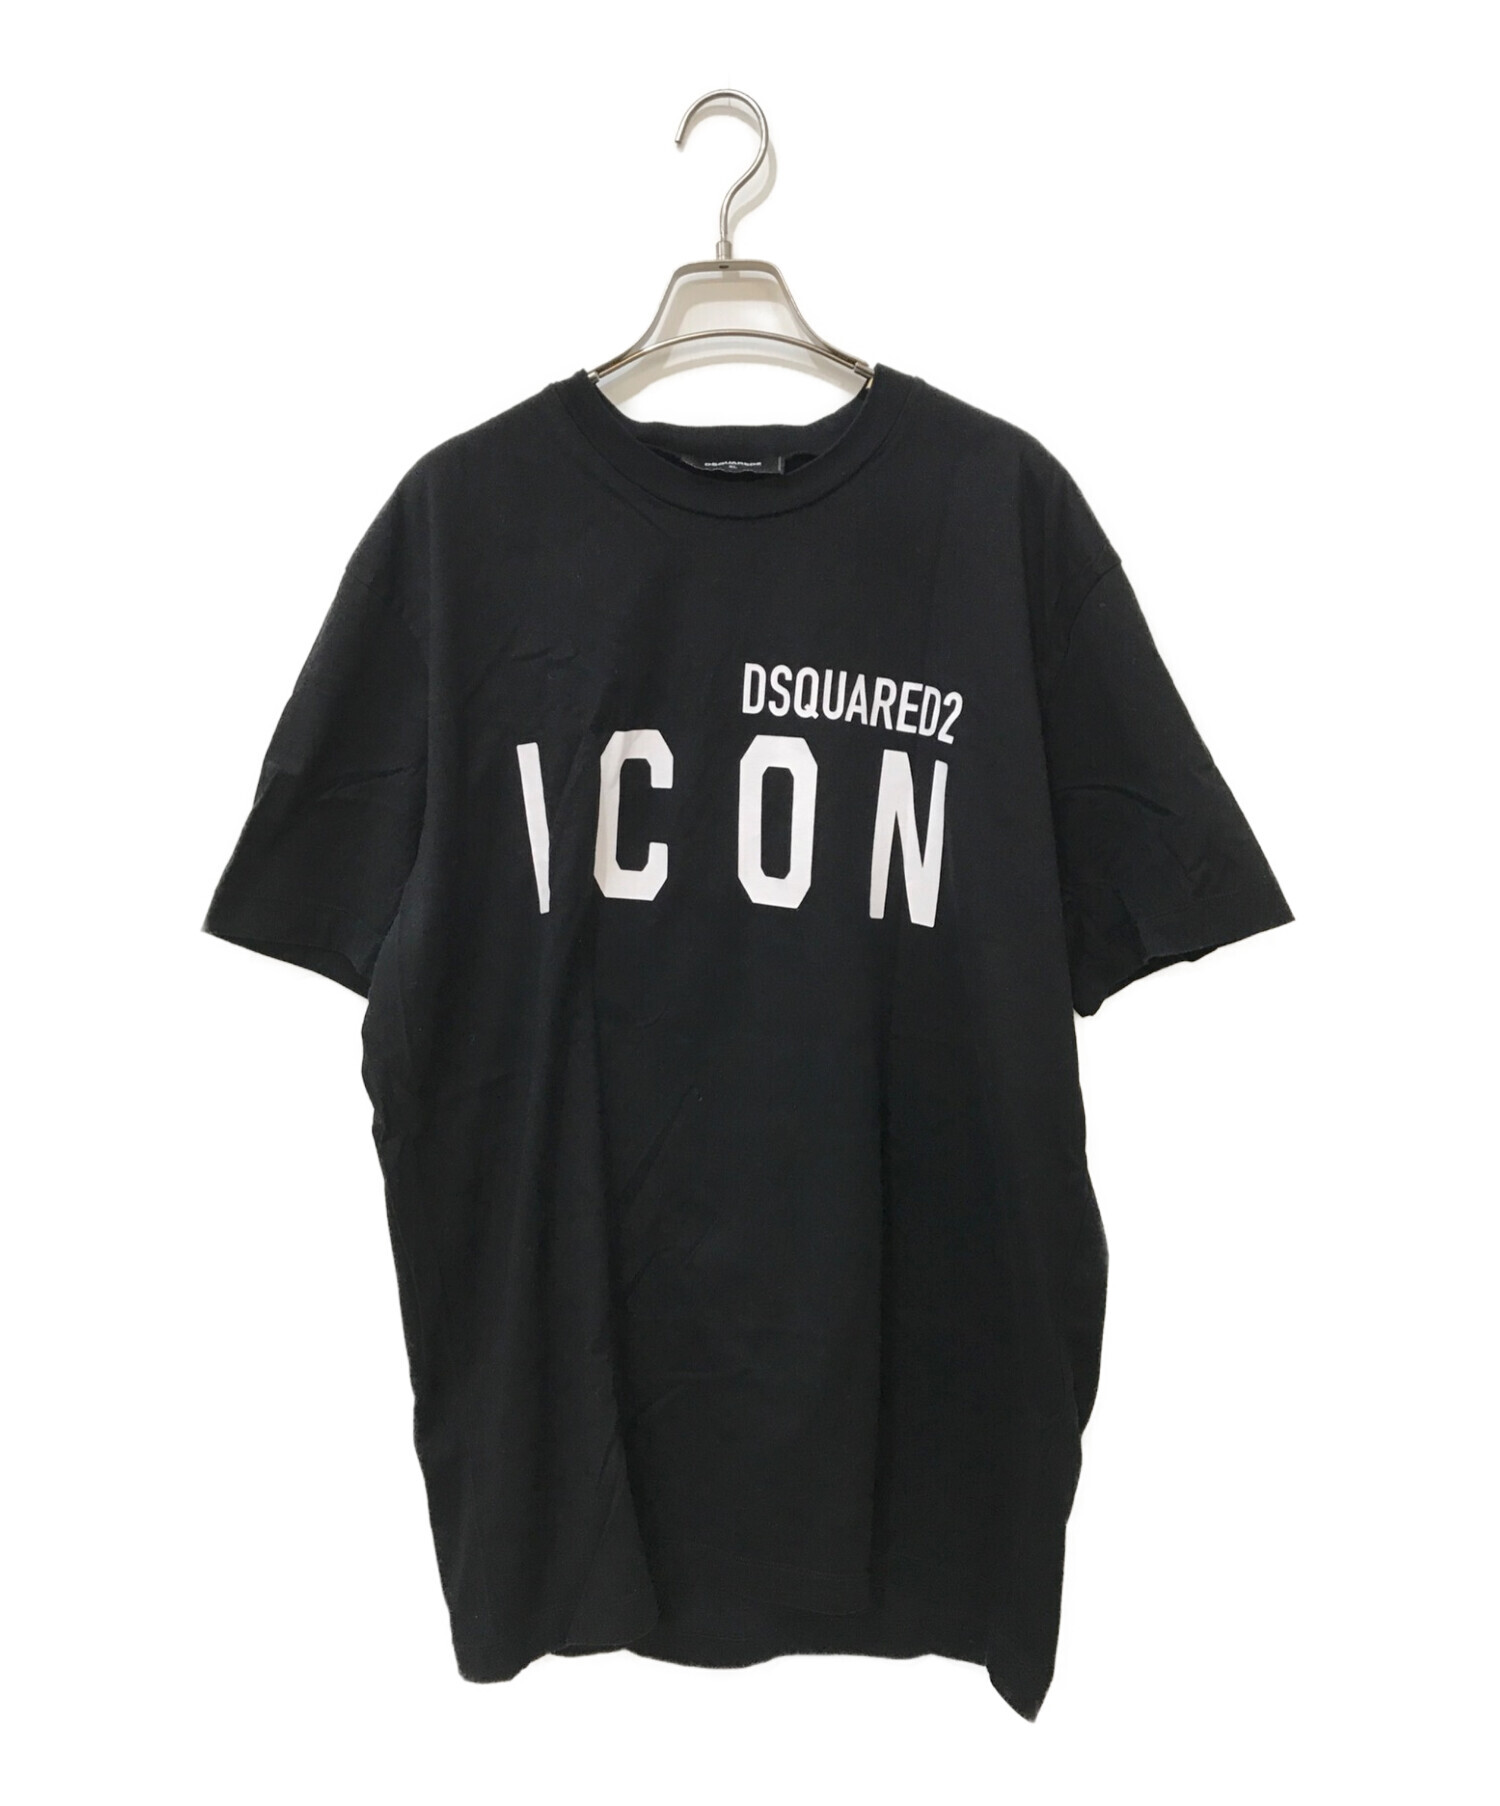 メンズファッション【新品未使用】DSQUARED2 ICON ロゴ Tシャツ ブラック XLサイズ